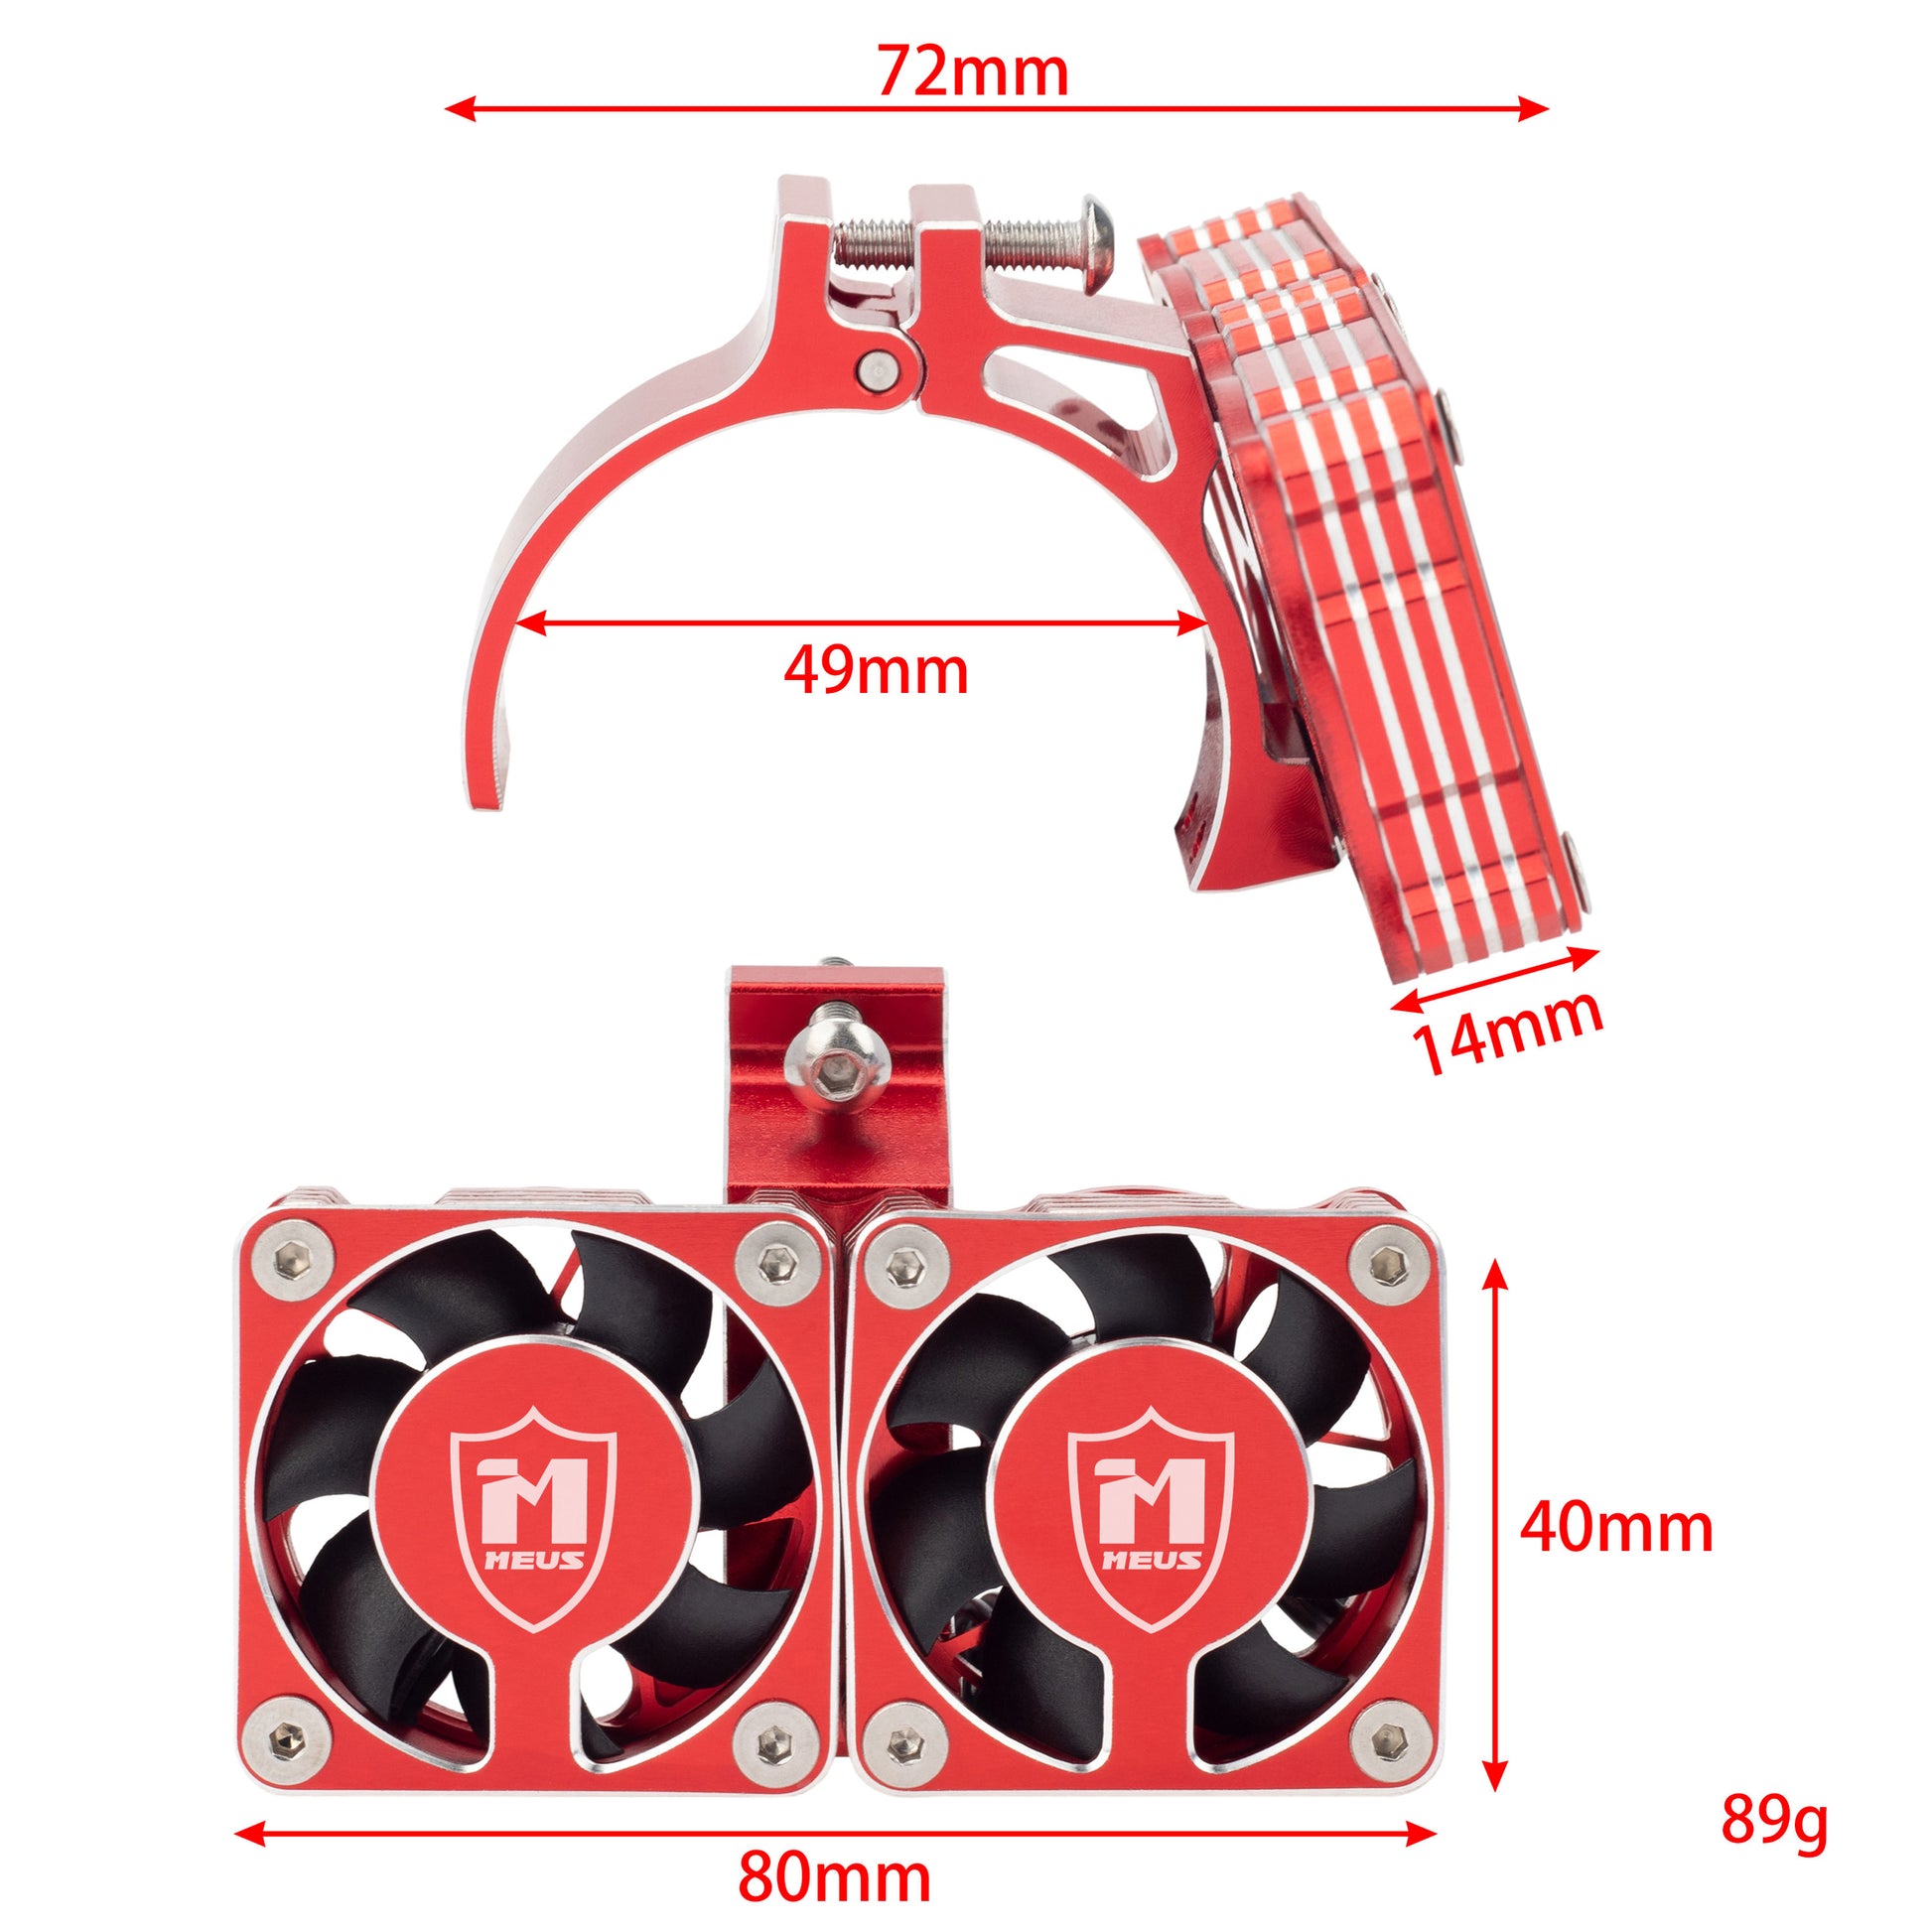 Red RC motor cooling fan heat sink size